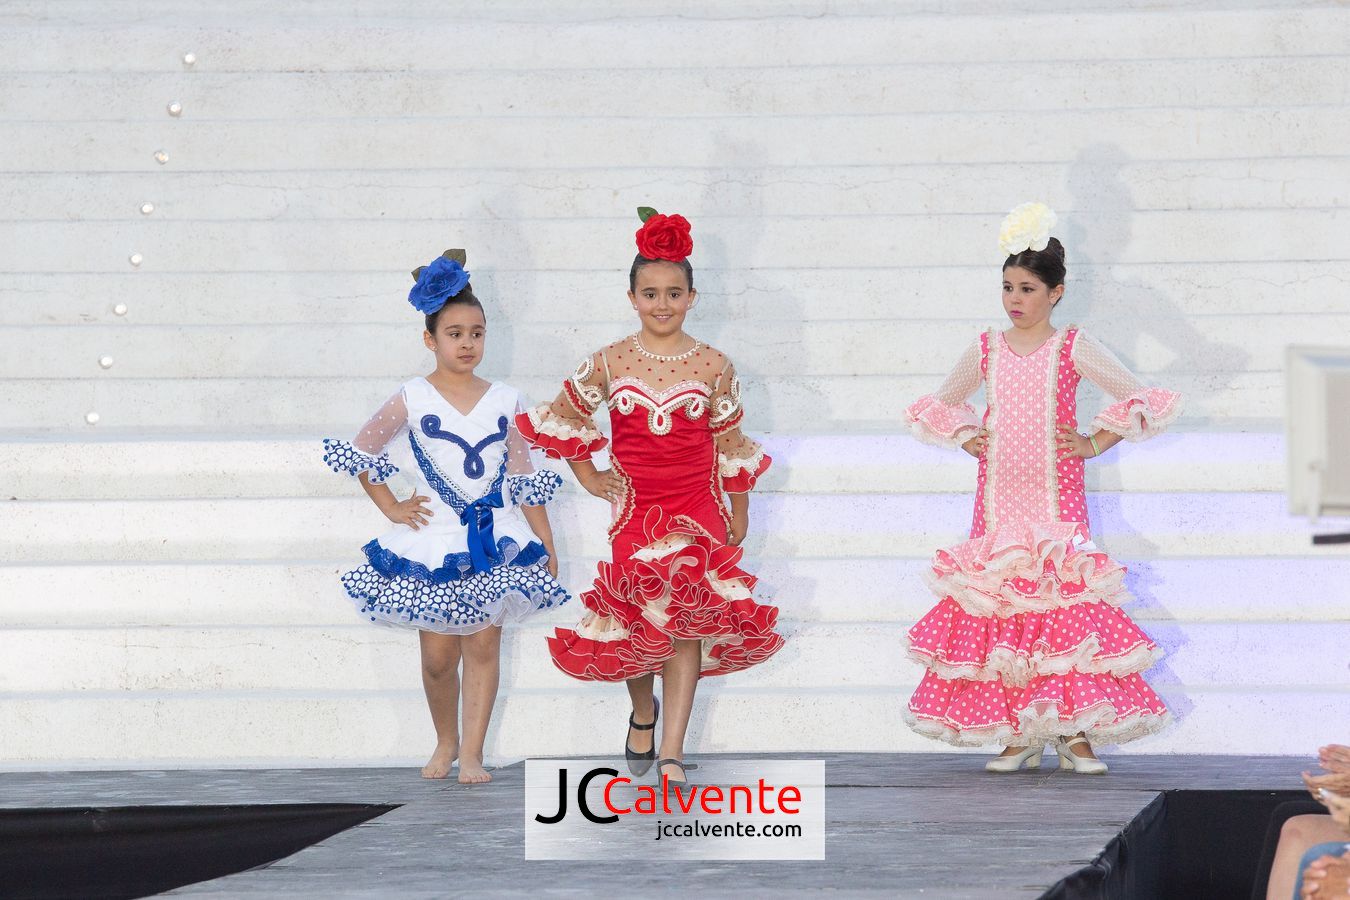 estepona fotografo desfile pepi alonso moda flamenca en el orquidarioestepona fotografo desfile pepi alonso moda flamenca en el orquidario